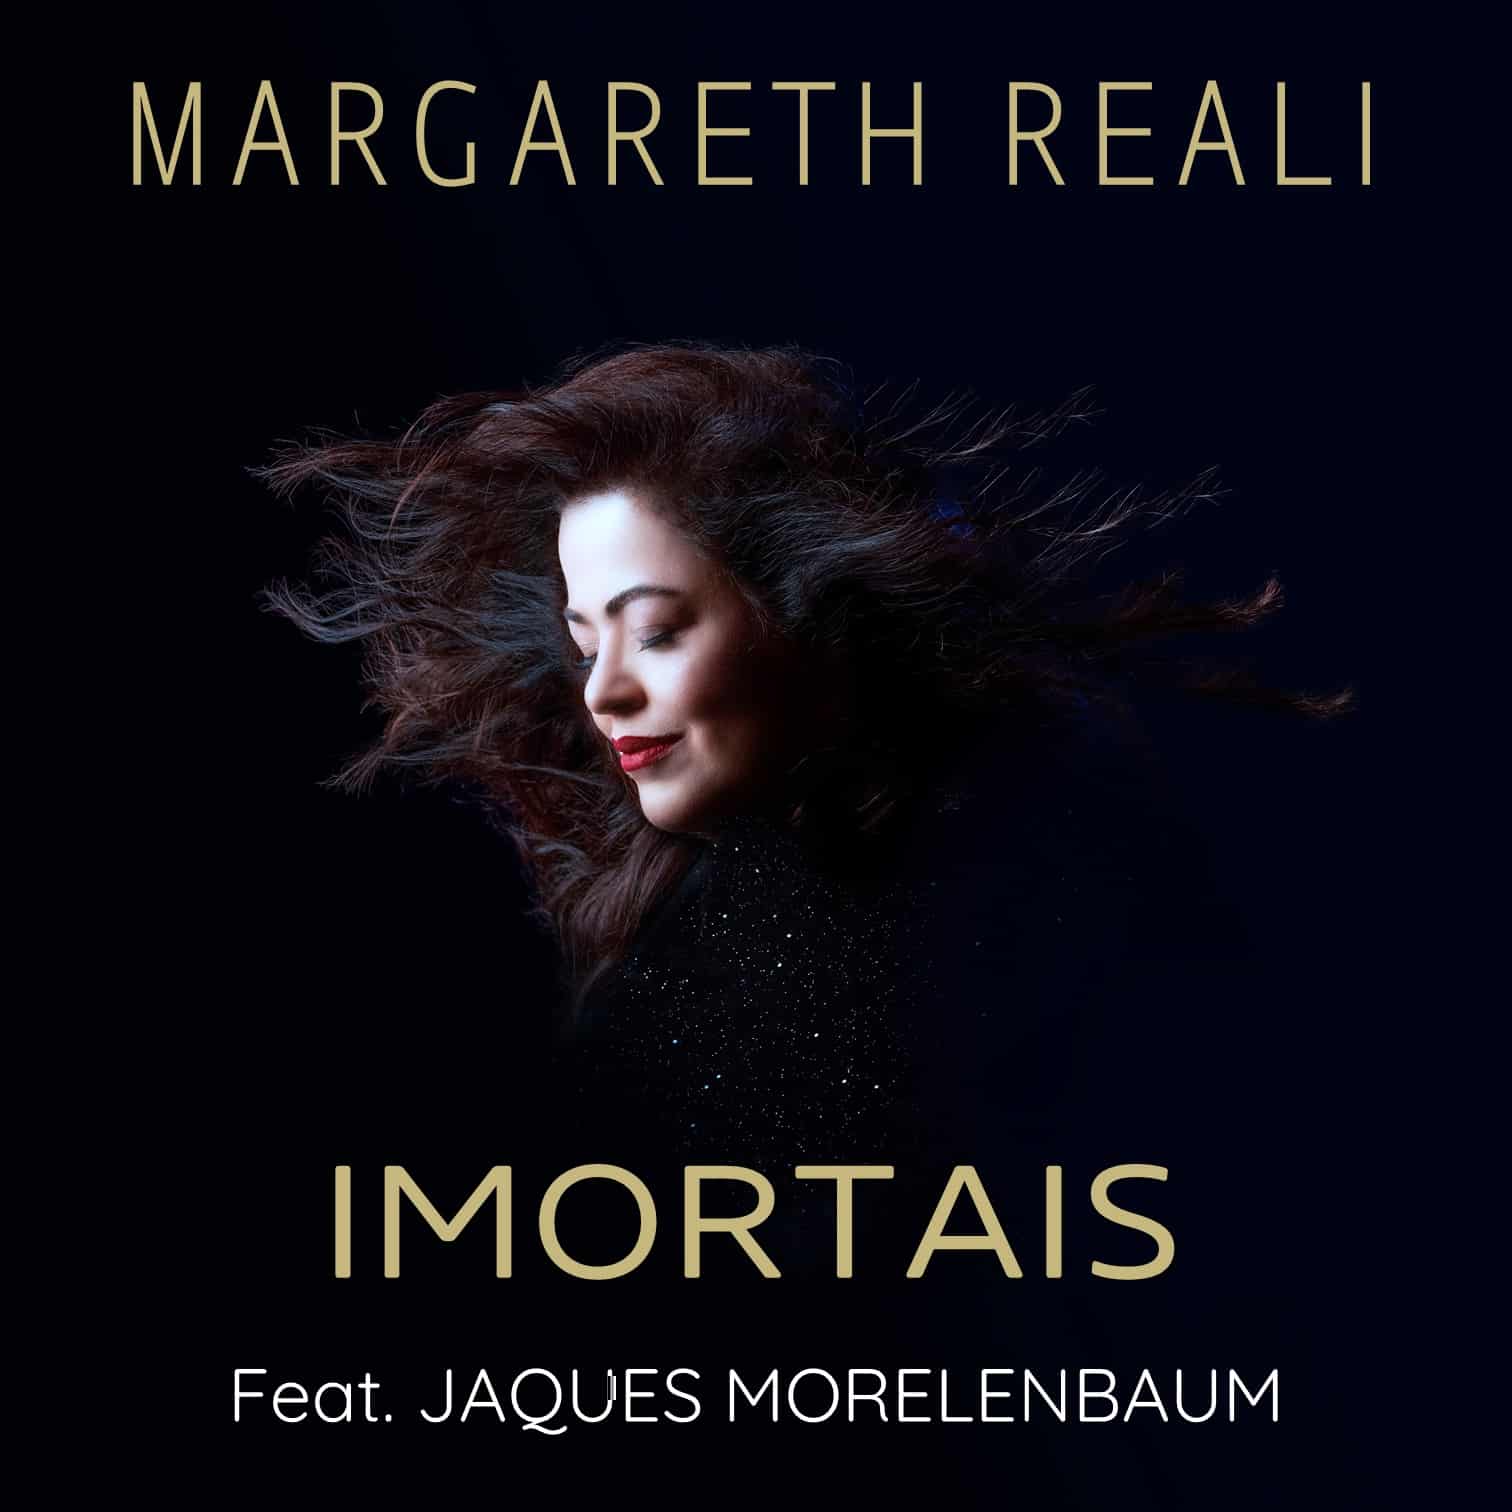 revistaprosaversoearte.com - Margareth Reali lança single 'Imortais', com participação de Jaques Morelenbaum